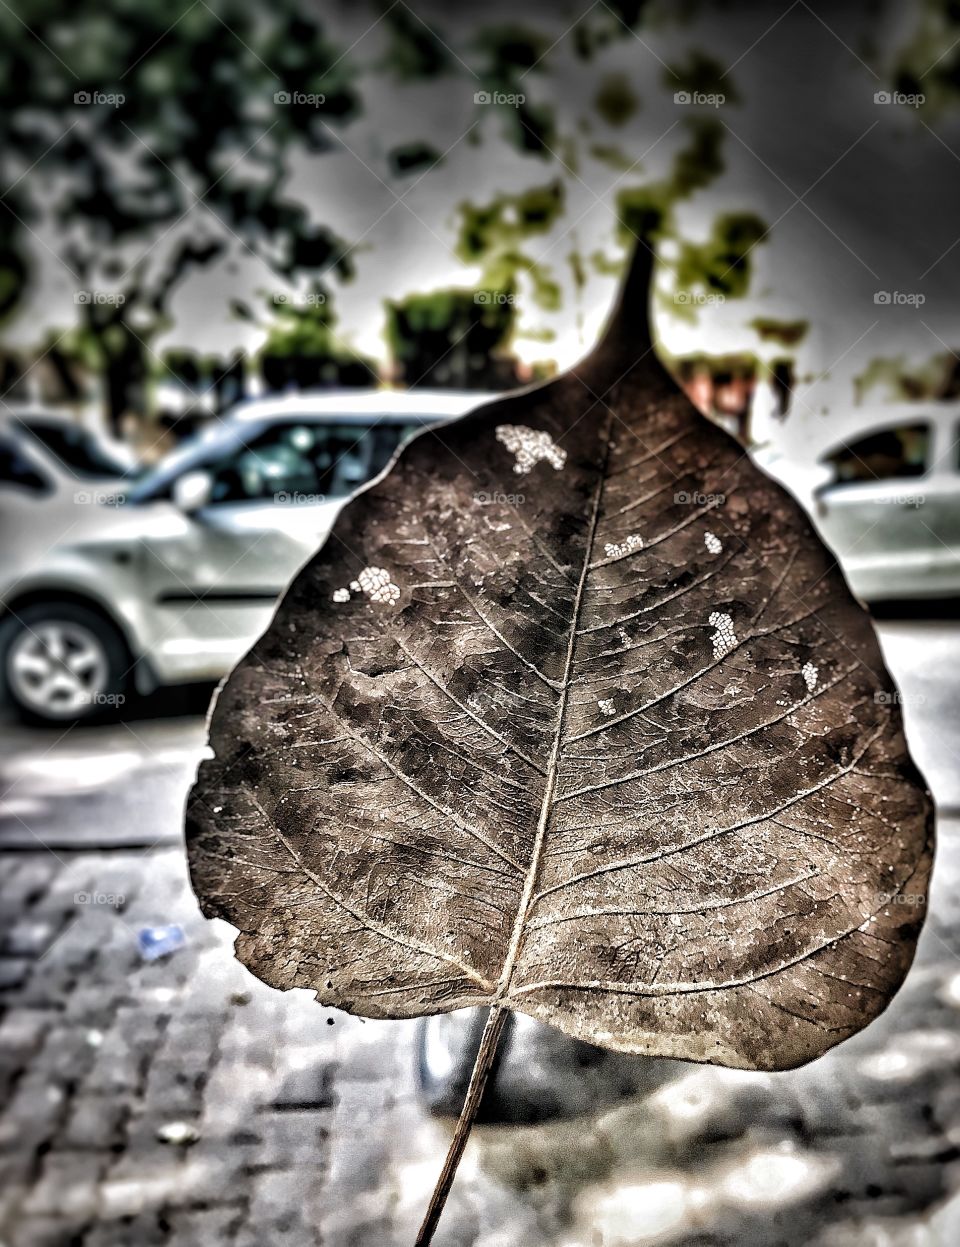 Human veins or leaves ???? 😬